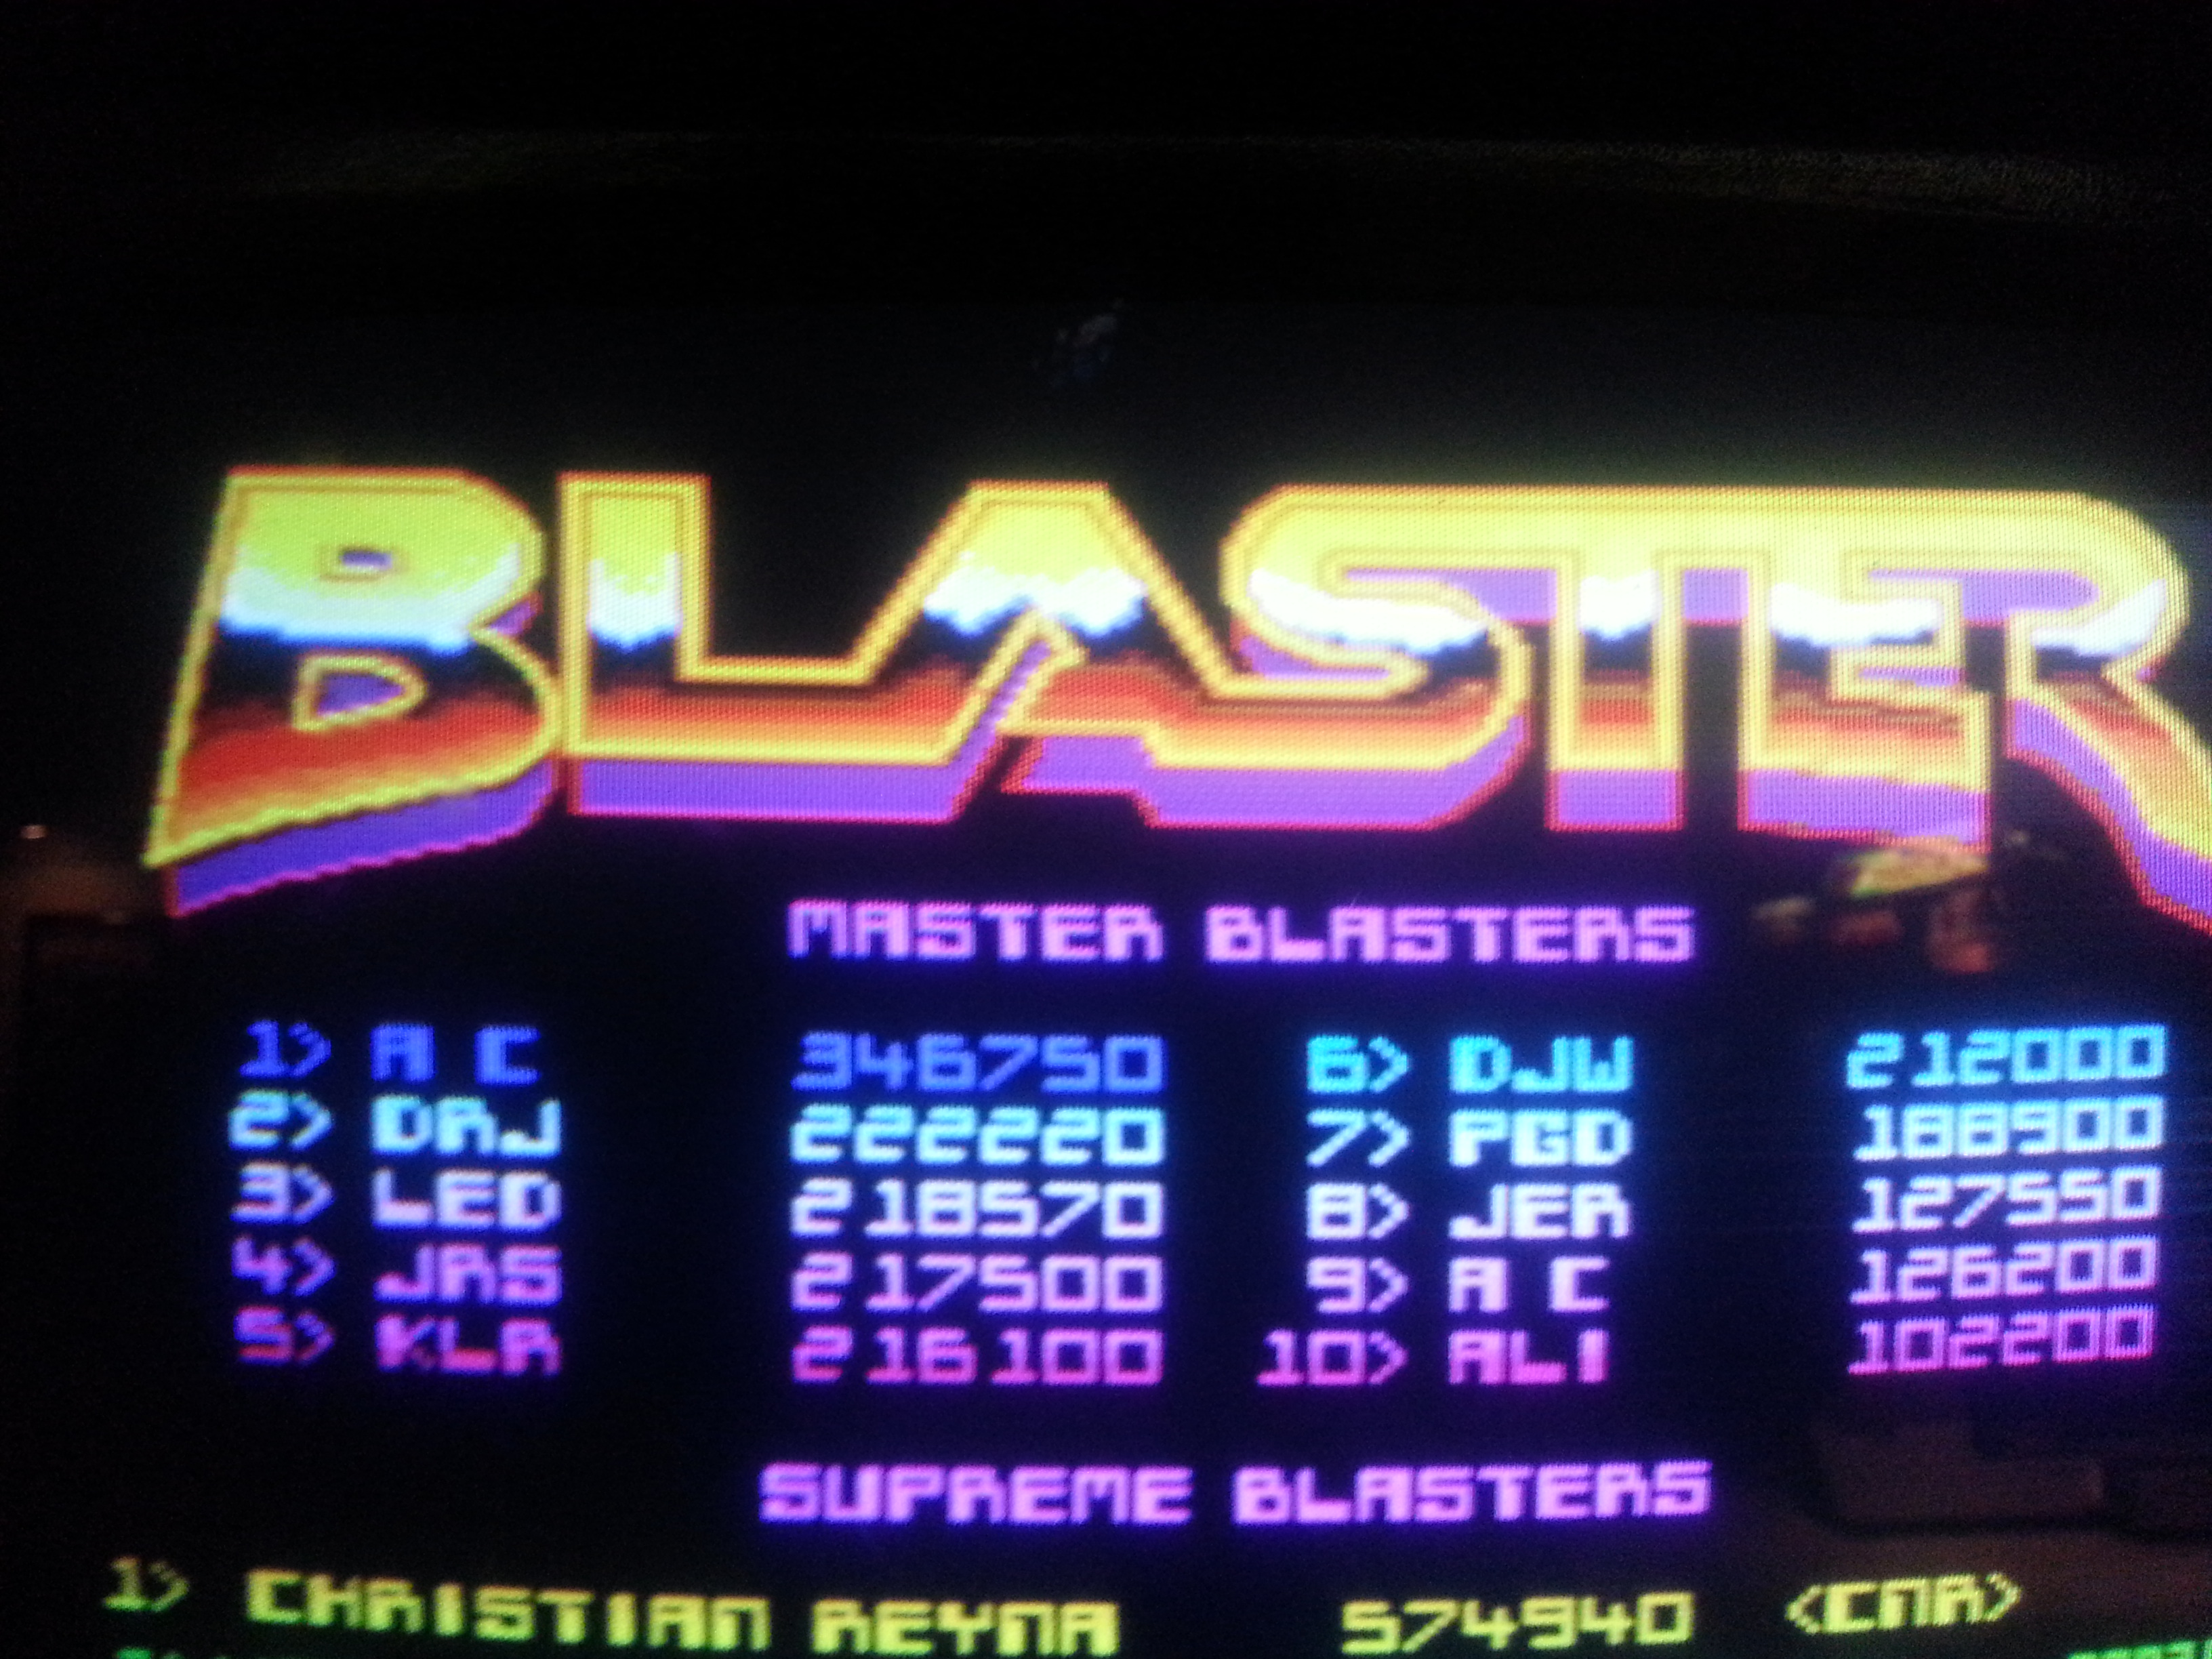 Blaster 346,750 points